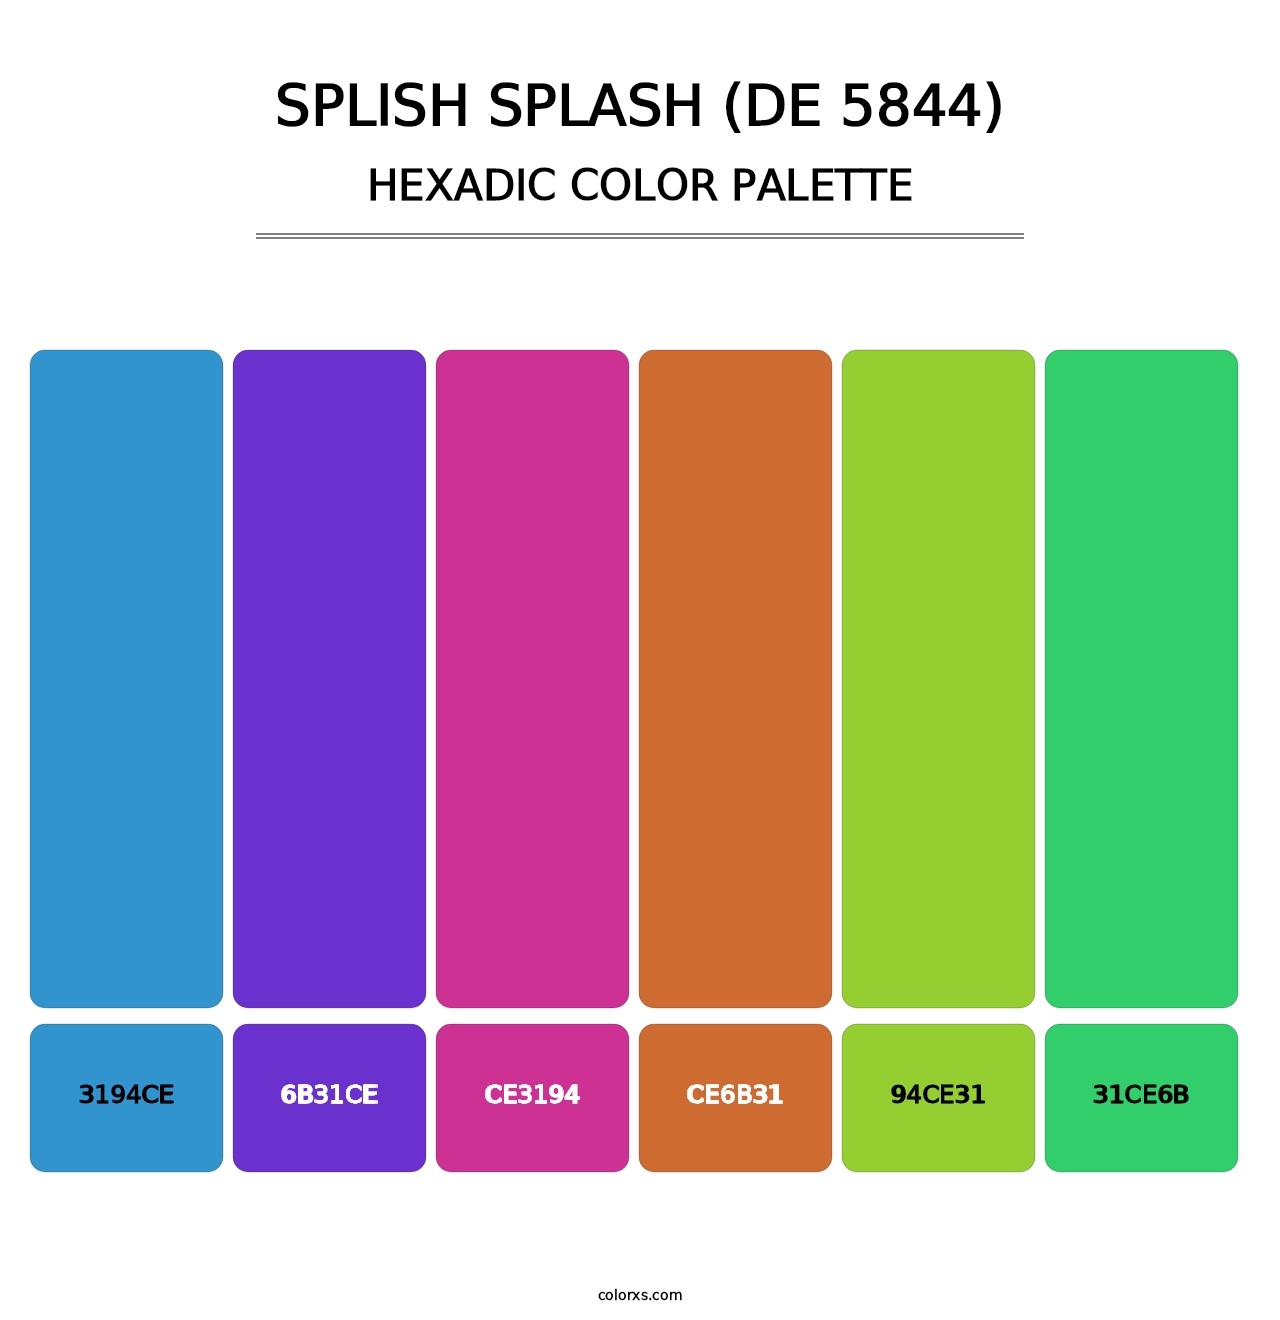 Splish Splash (DE 5844) - Hexadic Color Palette